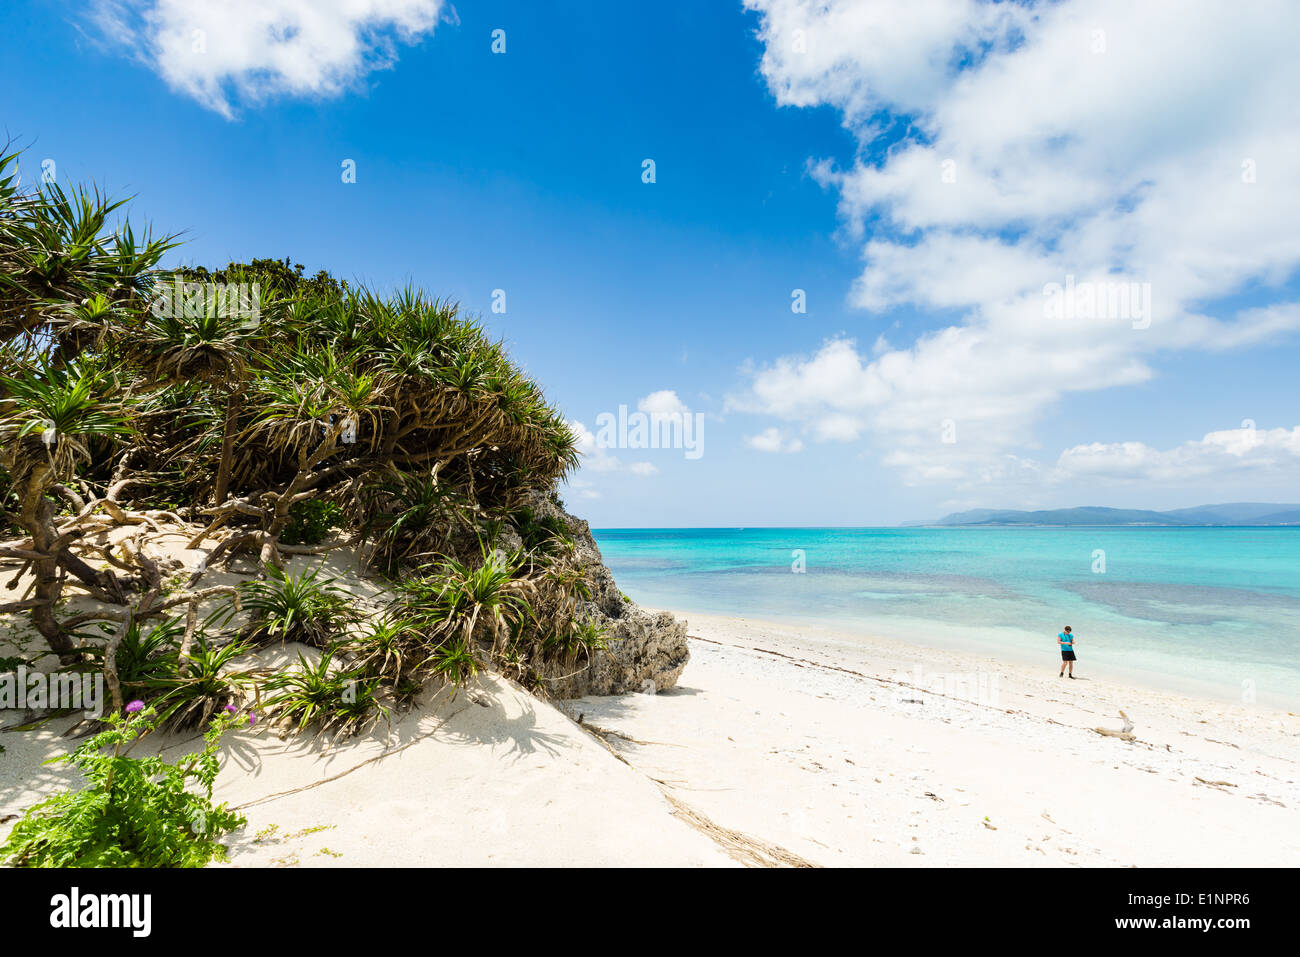 El hombre admira perfecta playa de arena blanca rodeada por las cristalinas aguas tropicales de Okinawa, Japón Foto de stock